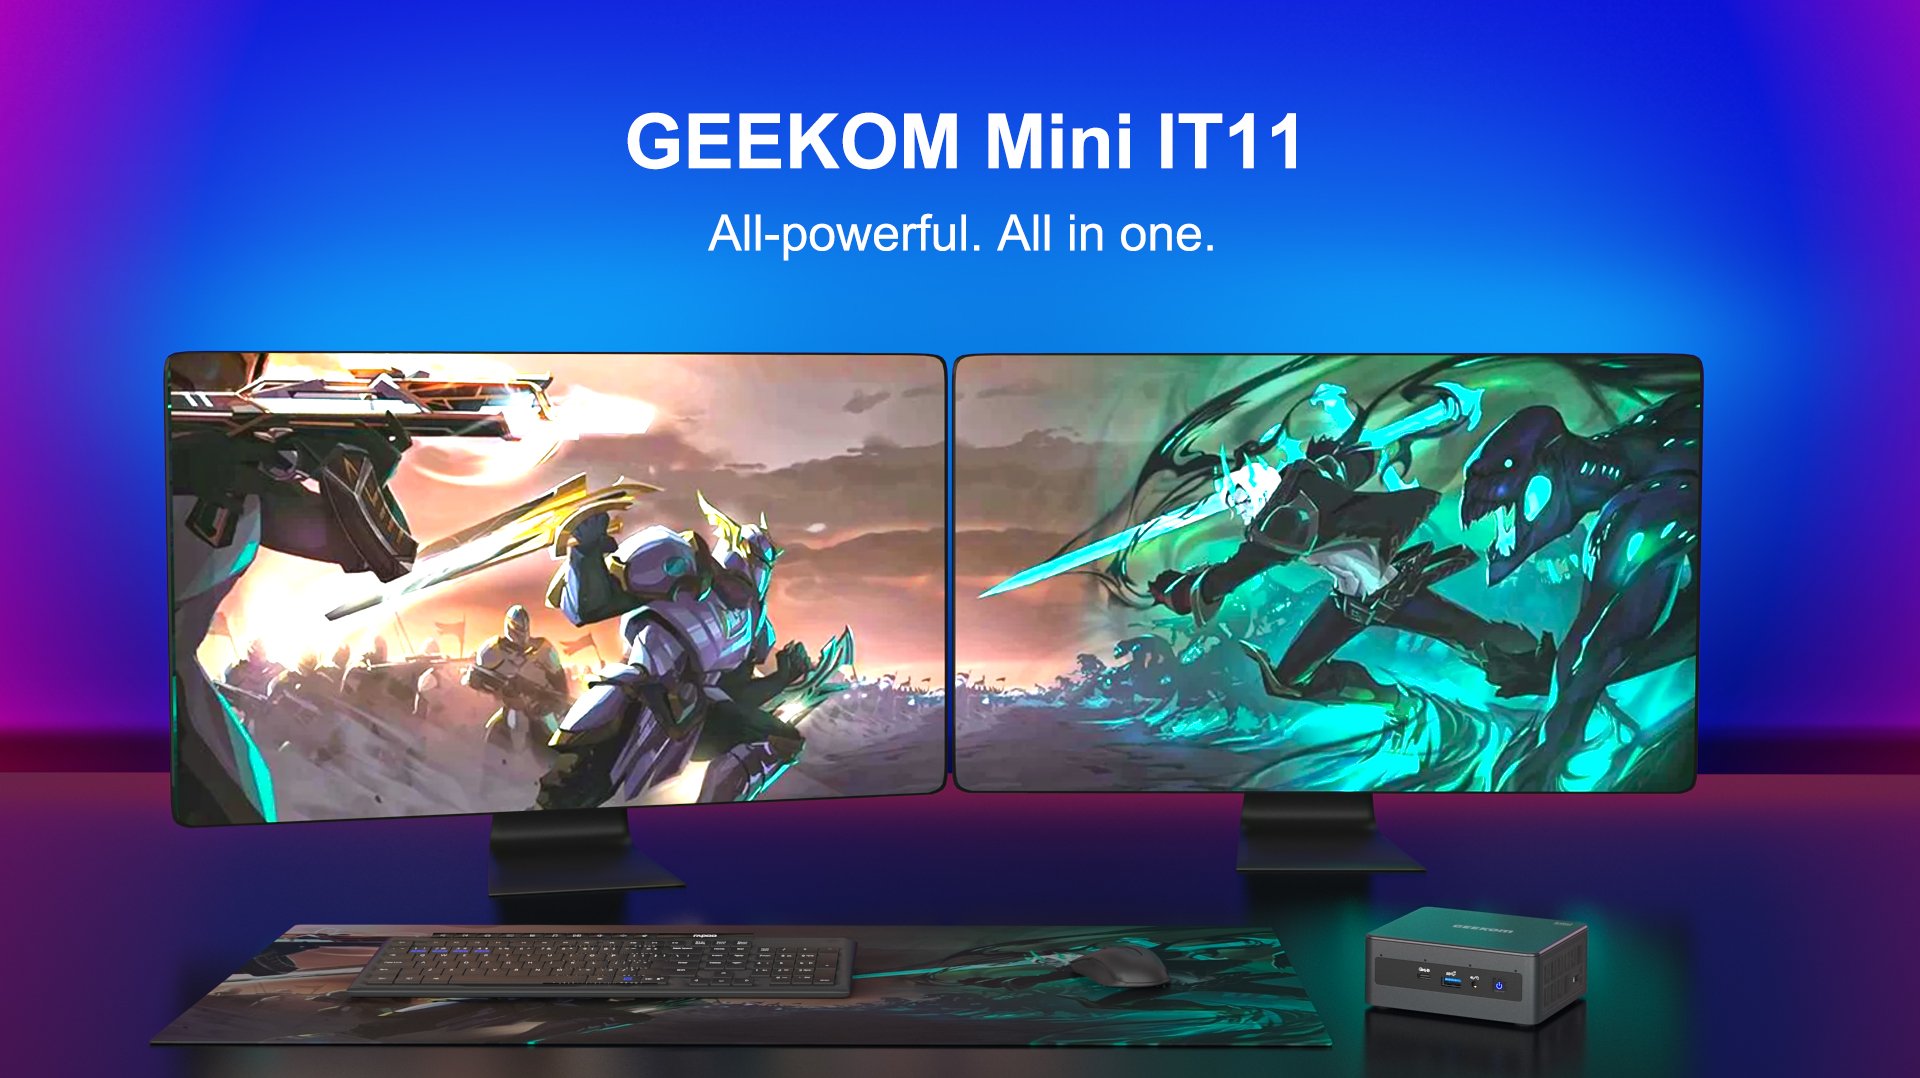 GEEKOM mini IT 11 mini PC